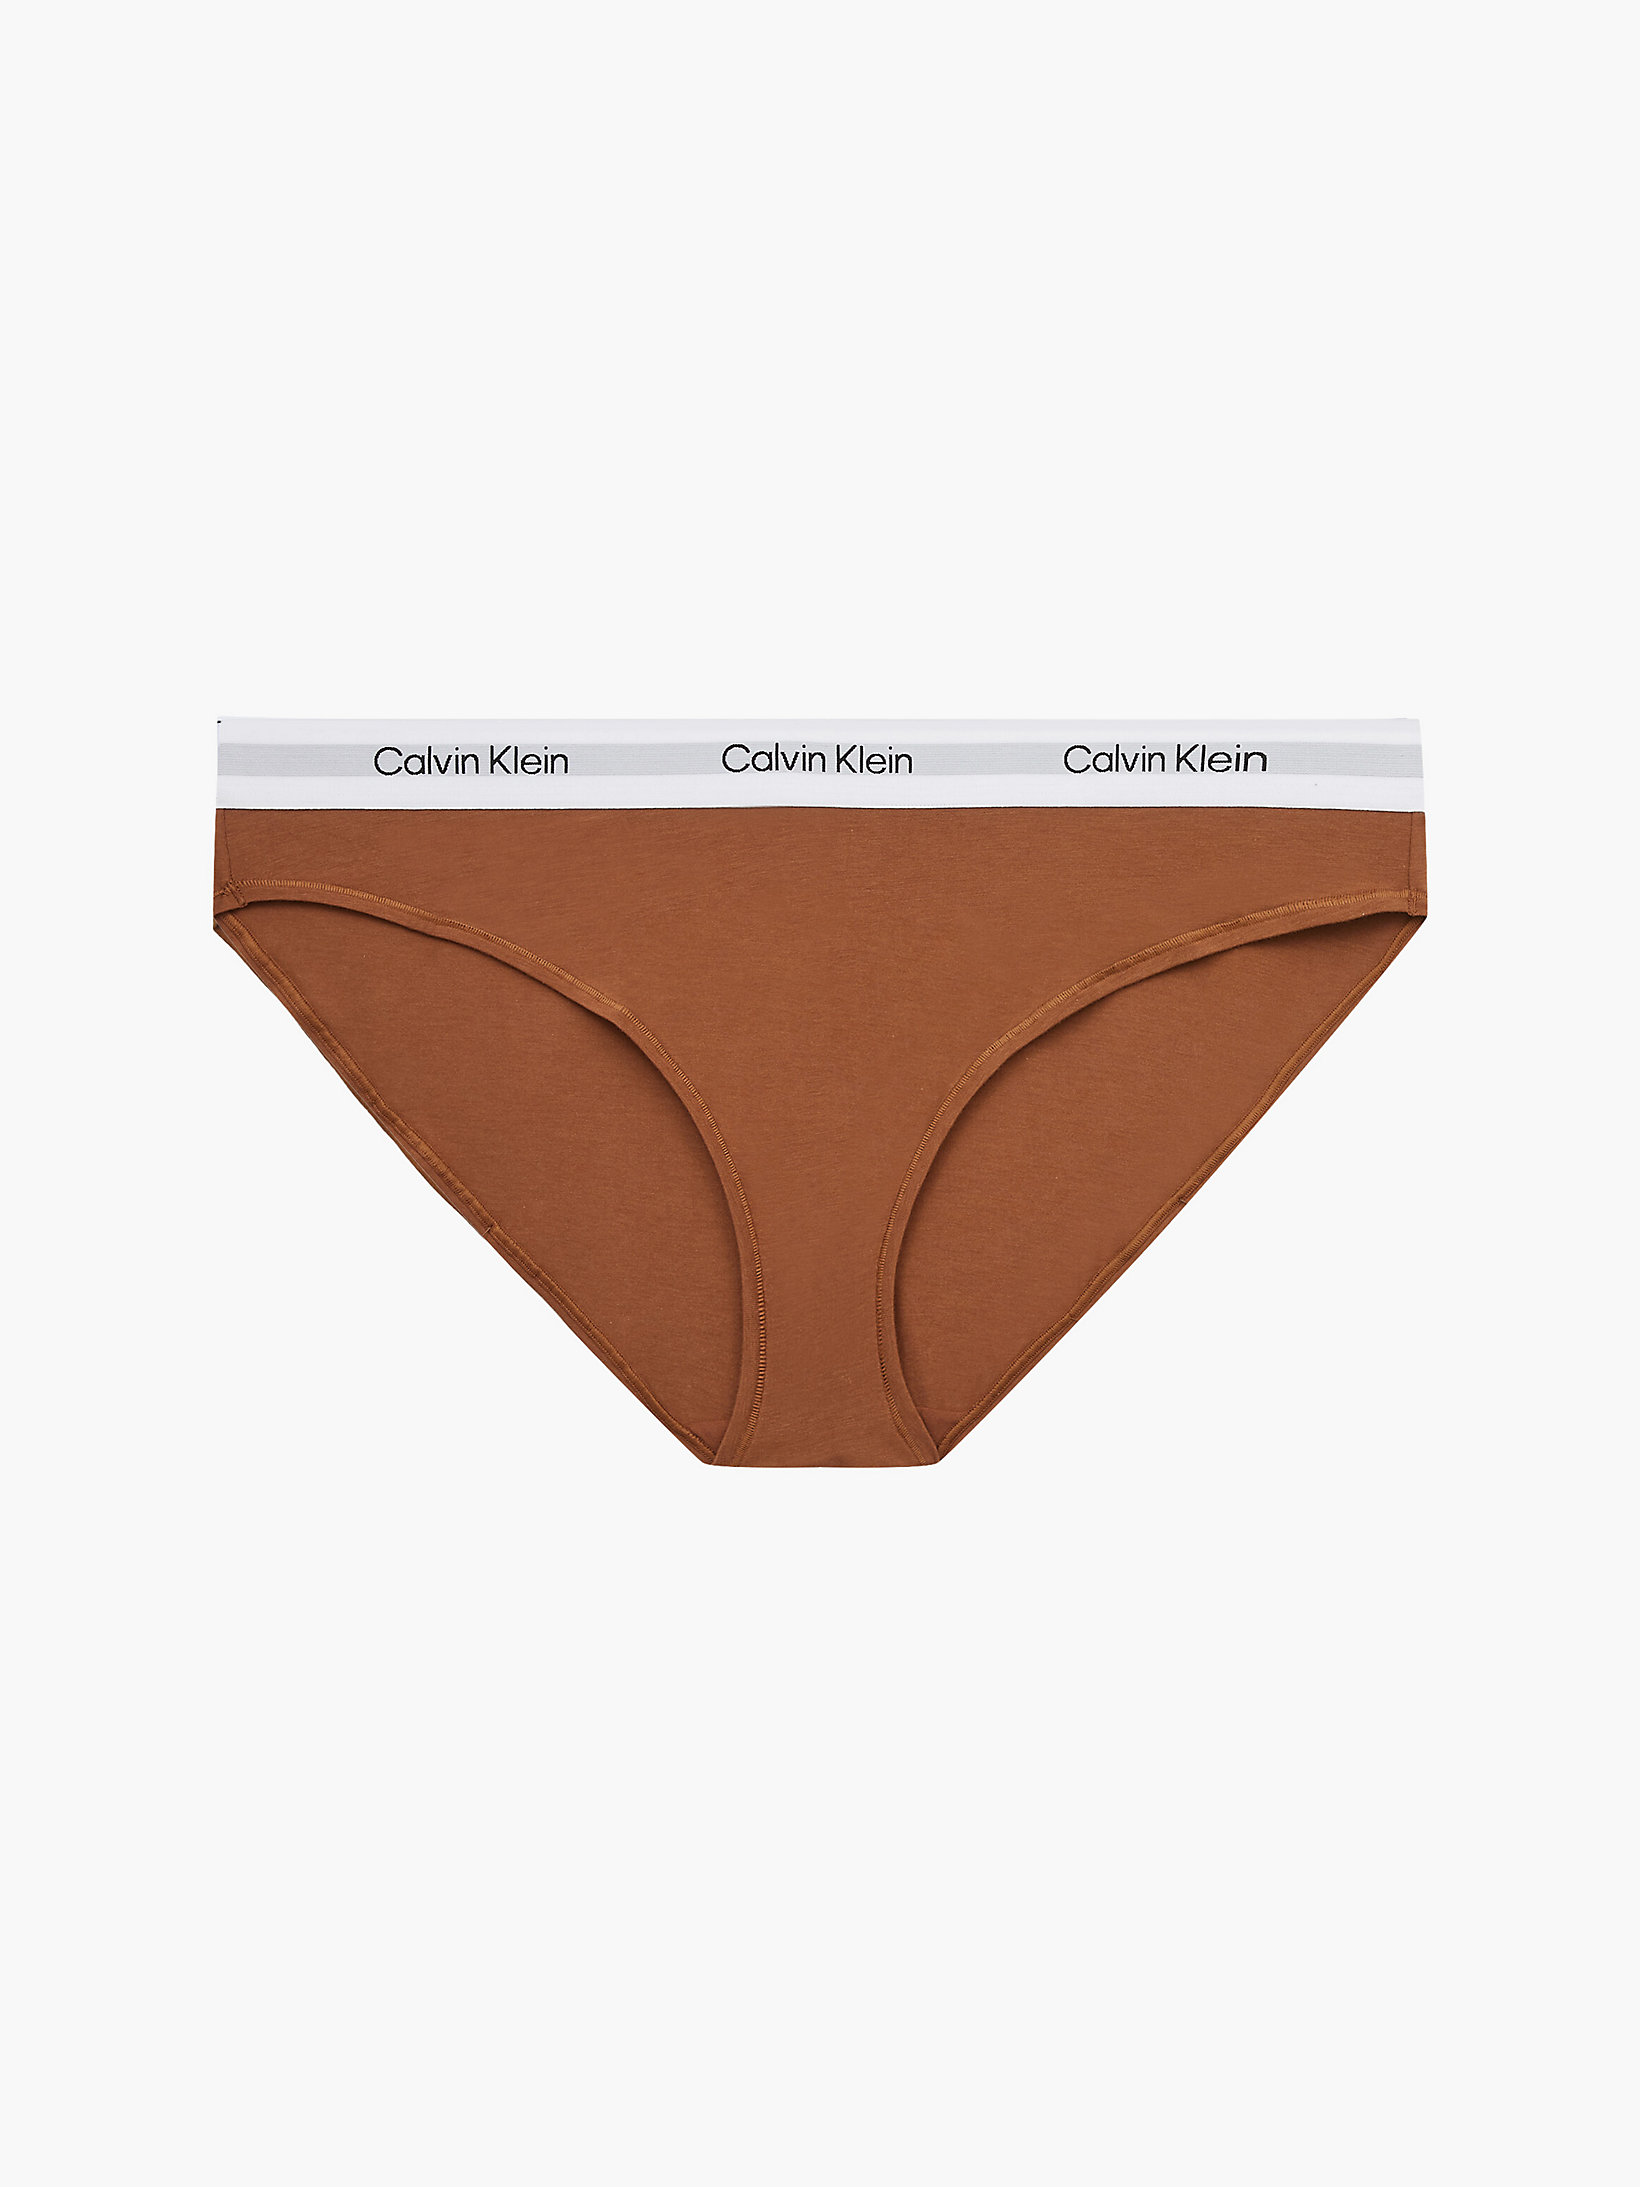 Warm Bronze Plus Size Bikini Brief - Modern Cotton undefined women Calvin Klein